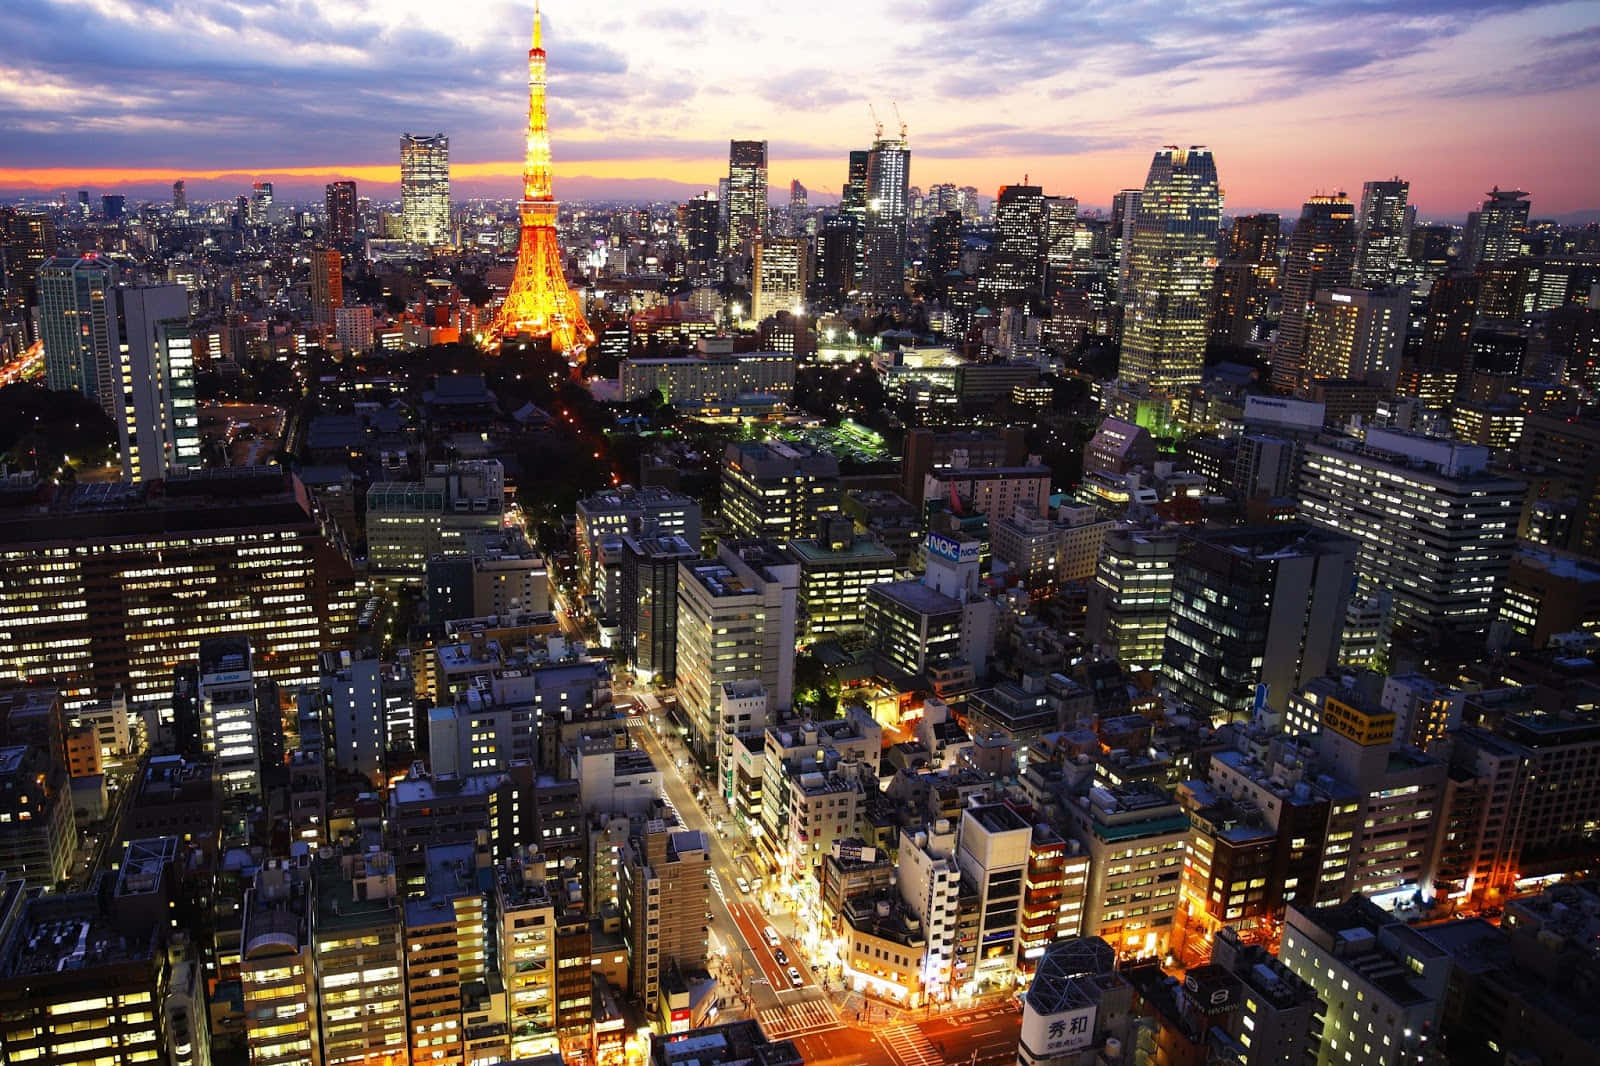 Lastraordinaria Skyline Della Città Di Tokyo, Giappone, Lascia A Bocca Aperta Tutti Coloro Che La Visitano.